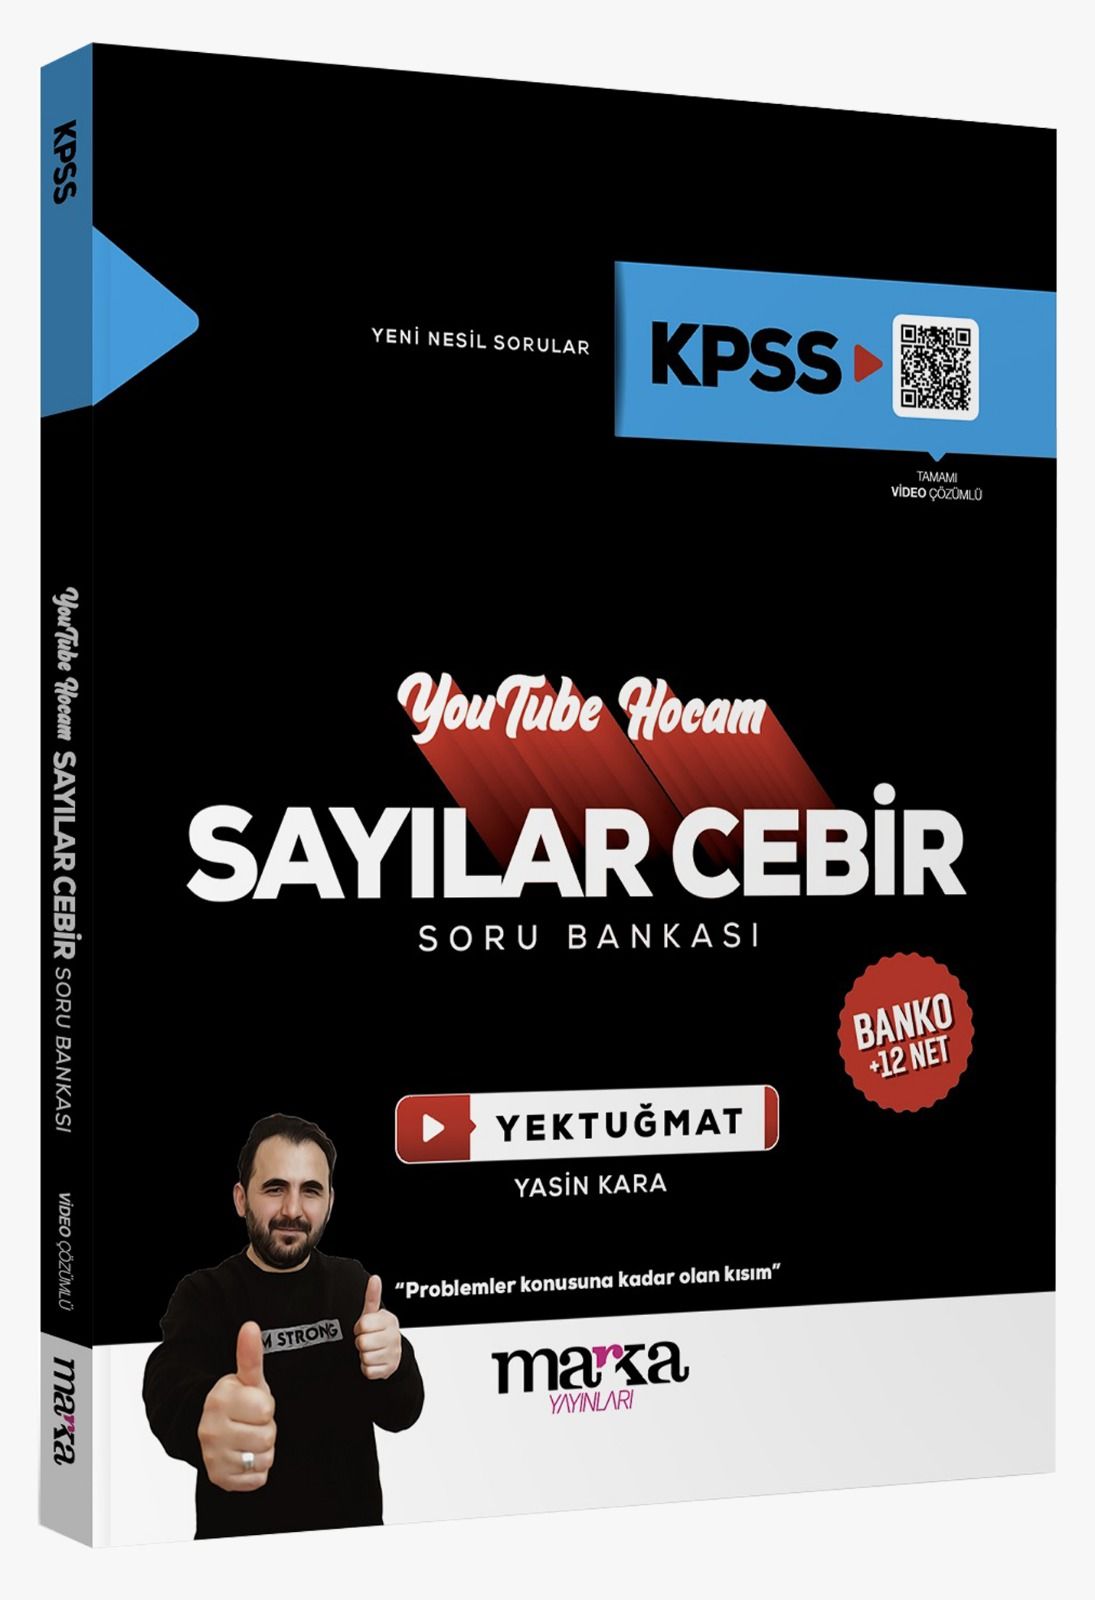 Marka Yayınları KPSS Sayılar Cebir Youtube Hocam Soru Bankası